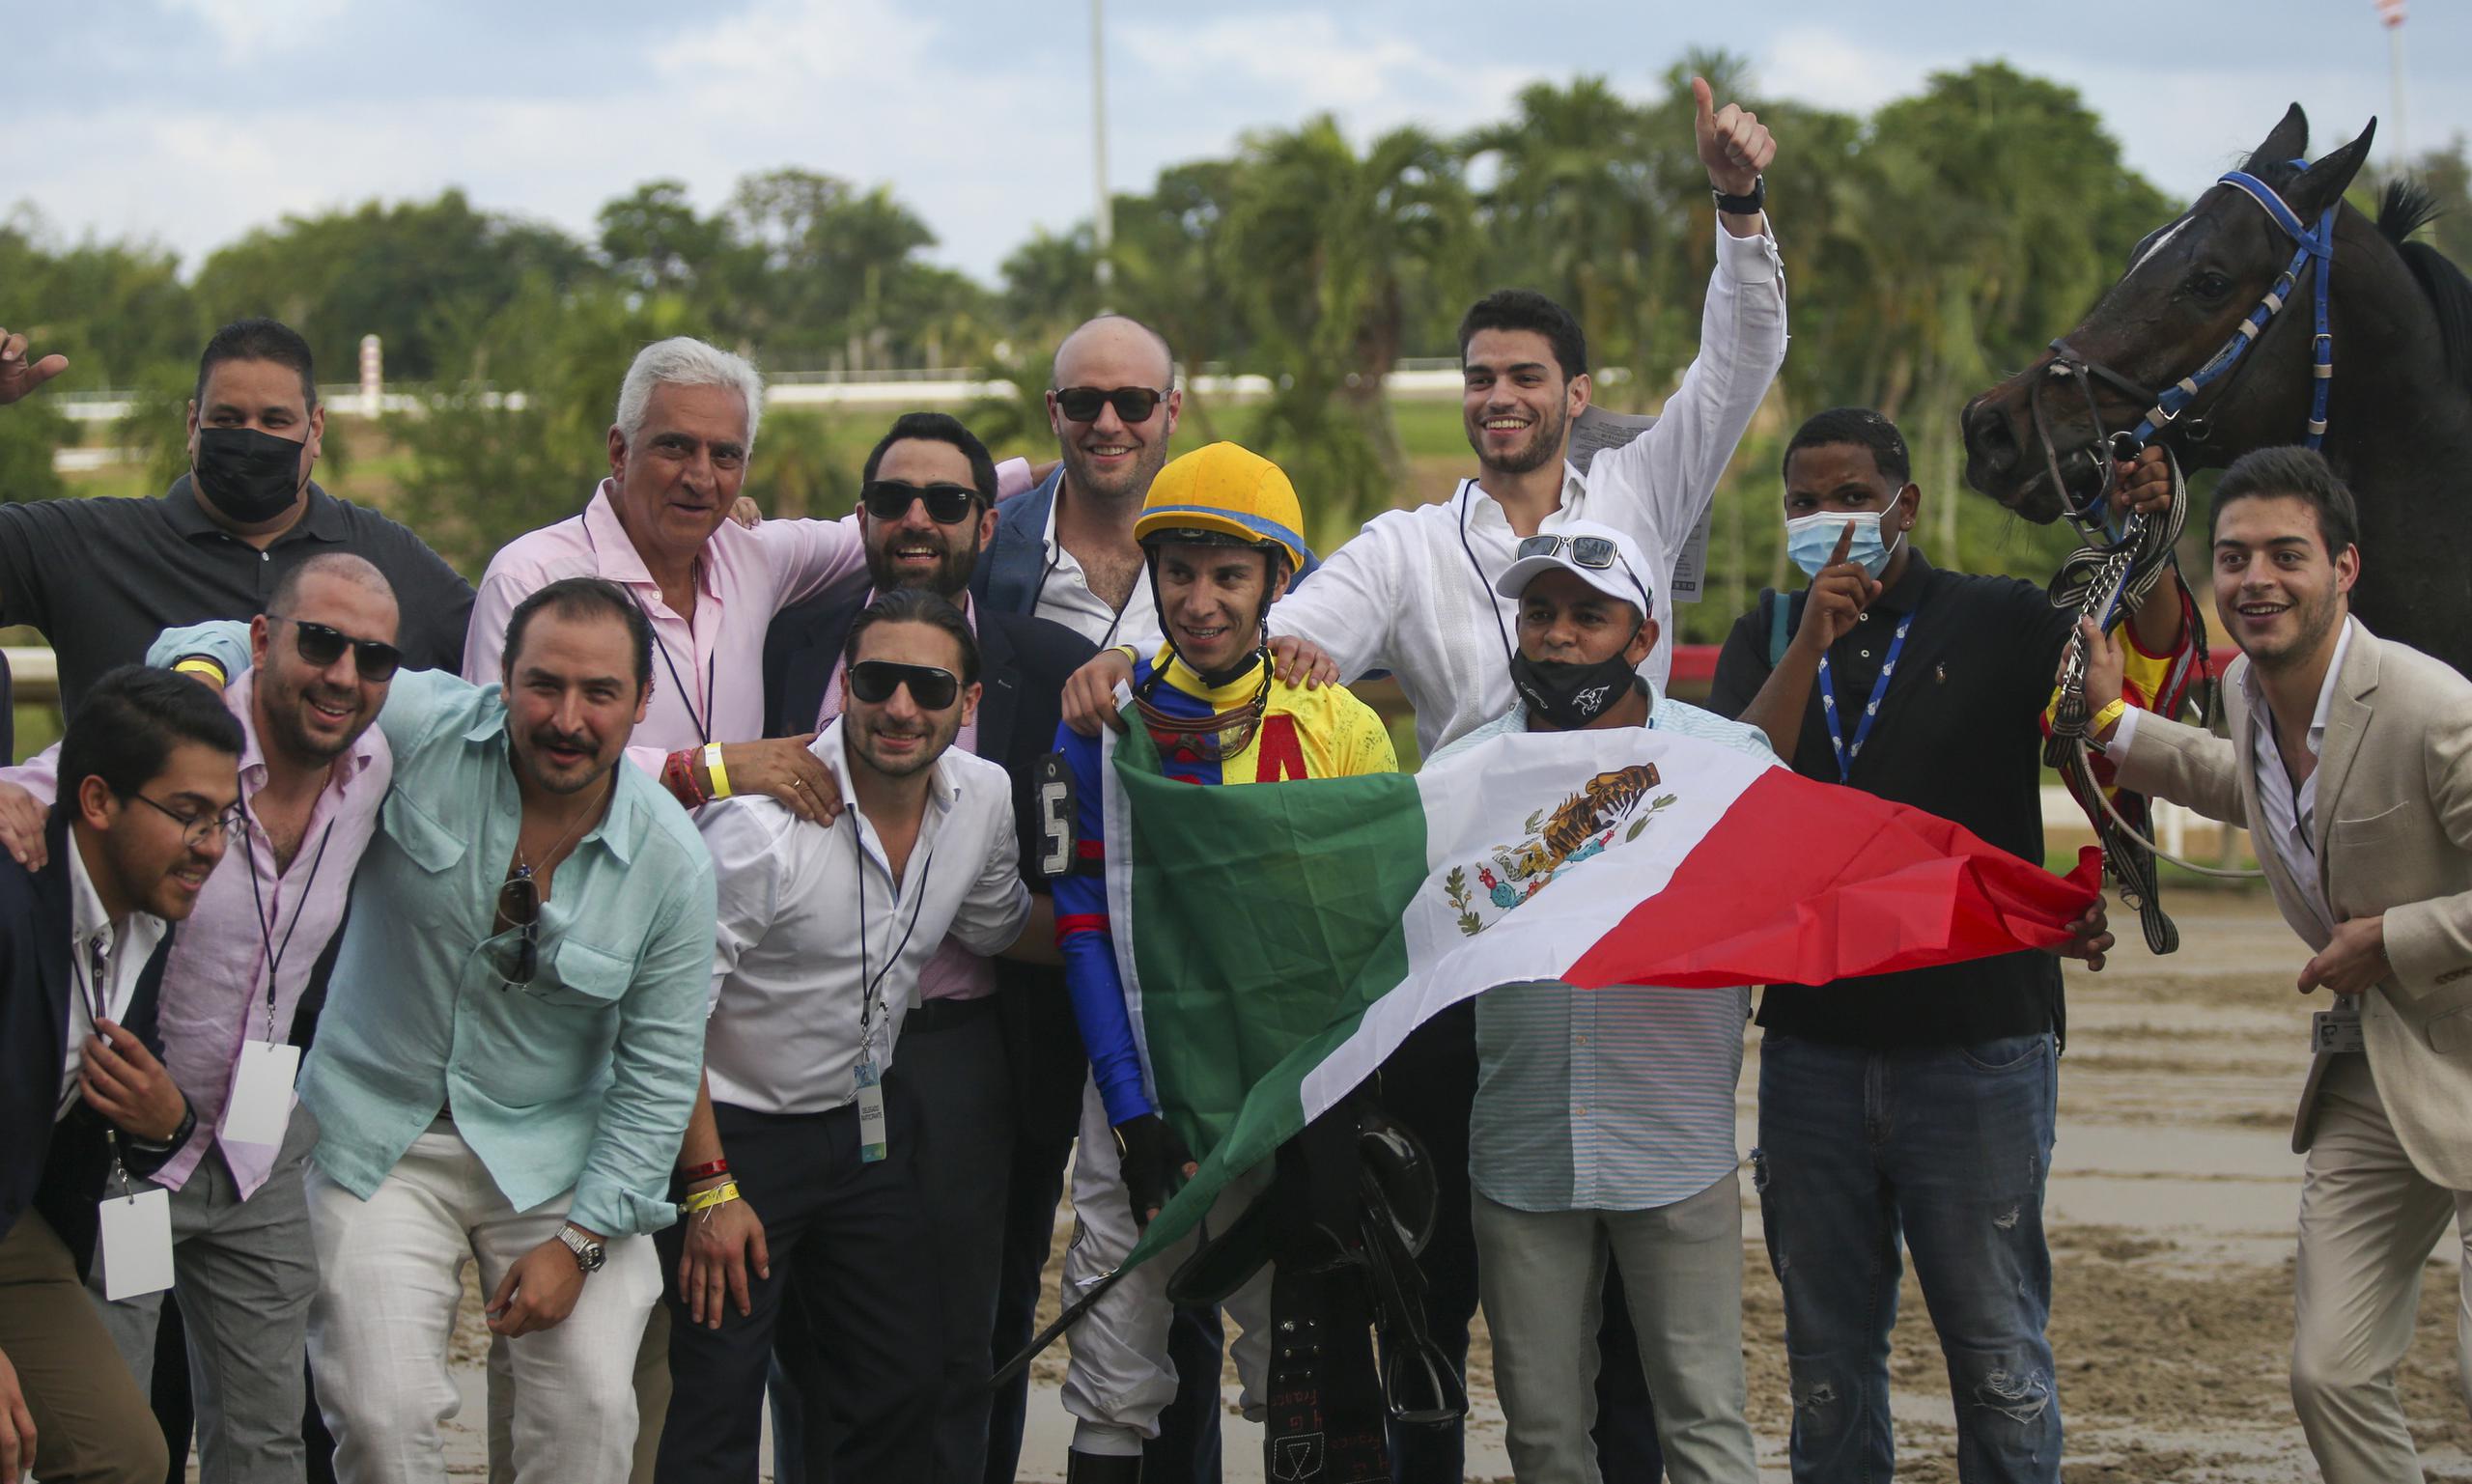 El grupo de México celebra su primer triunfo del día, el que logró el ejemplar Simow y el jinete Giovanni Franco en la Copa Velocidad, efectuado en el séptimo turno de la tanda en Camarero.